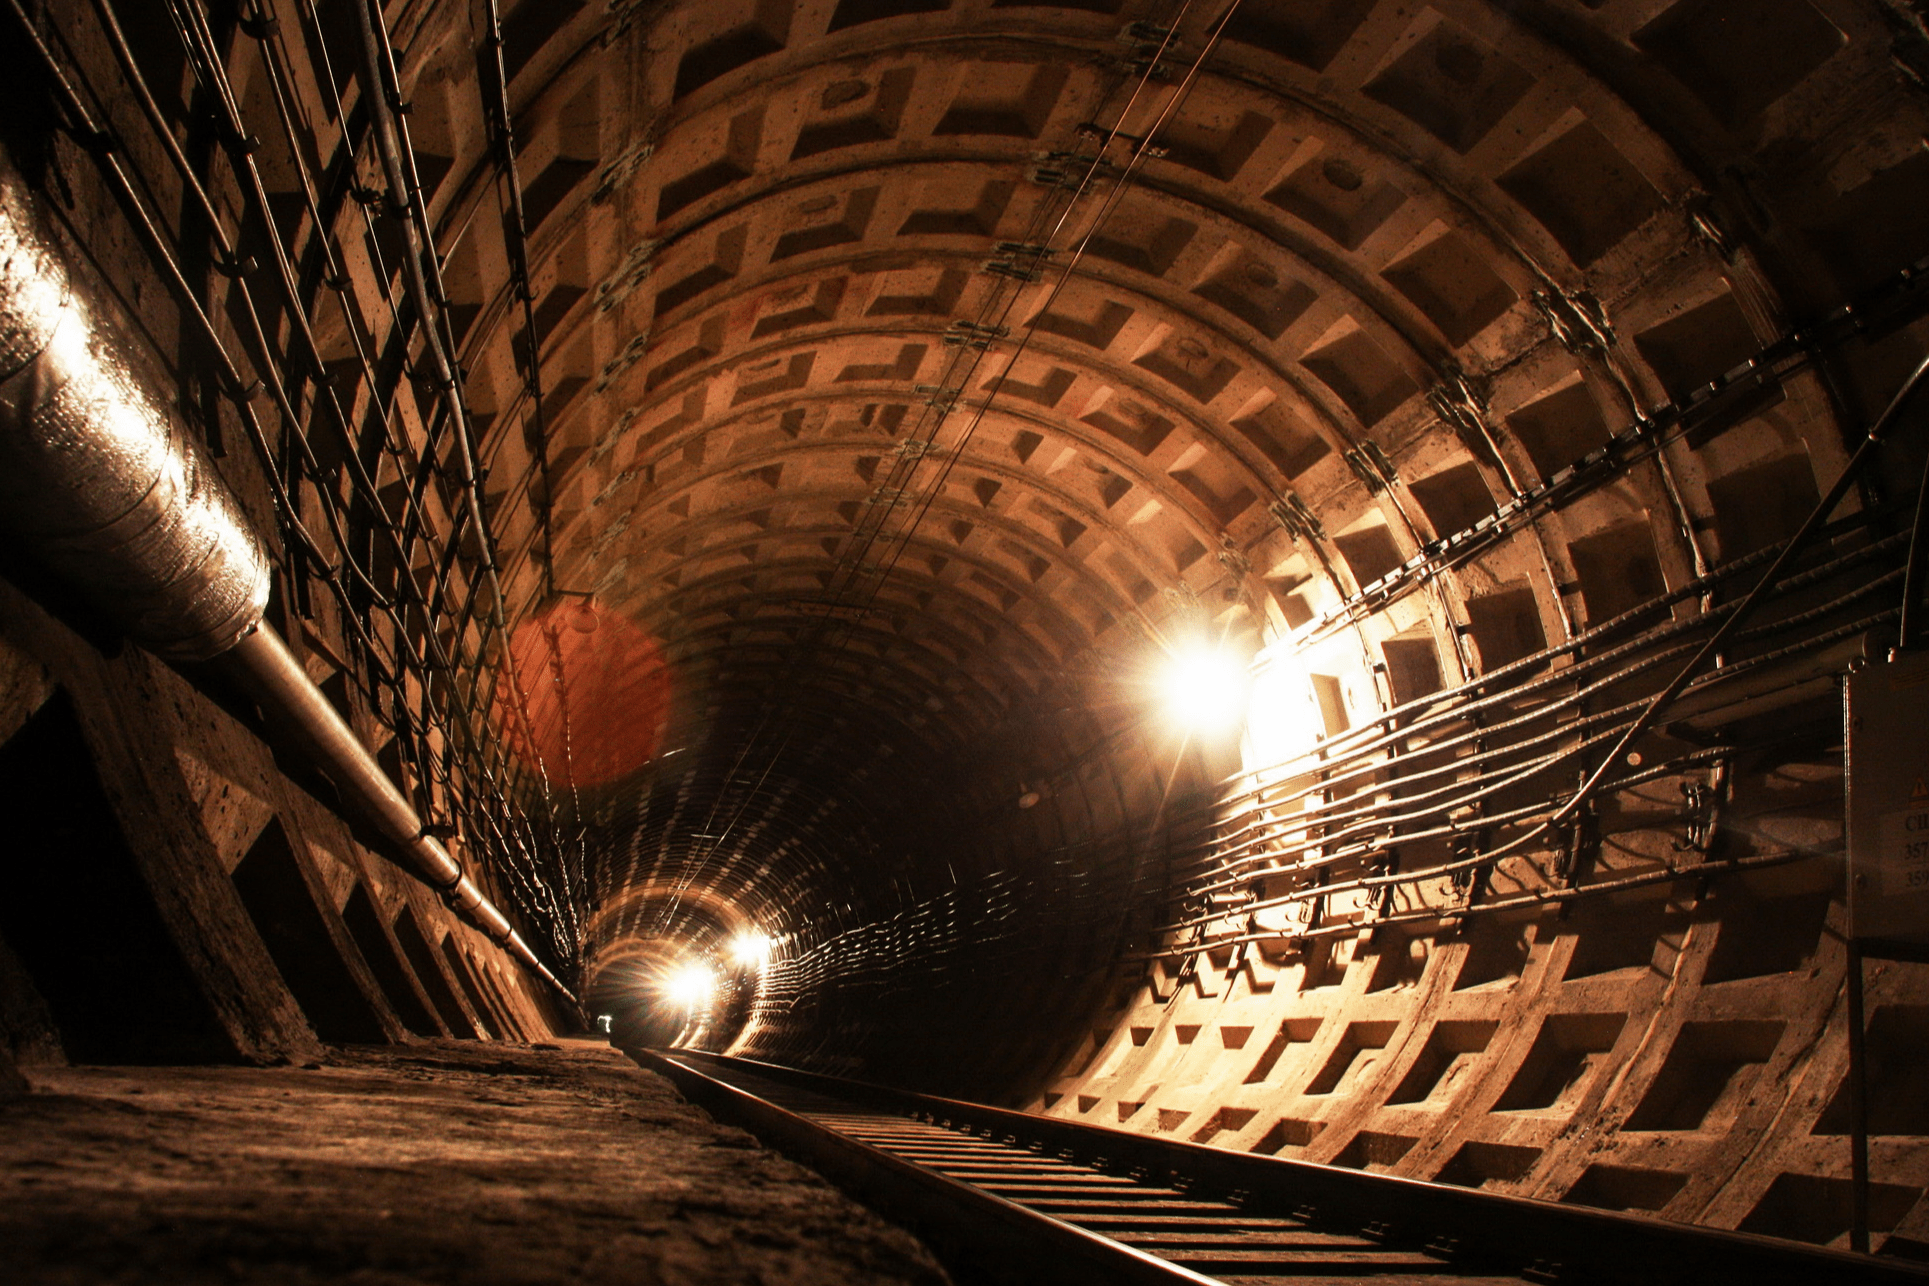 остановка тоннель московского вокзала